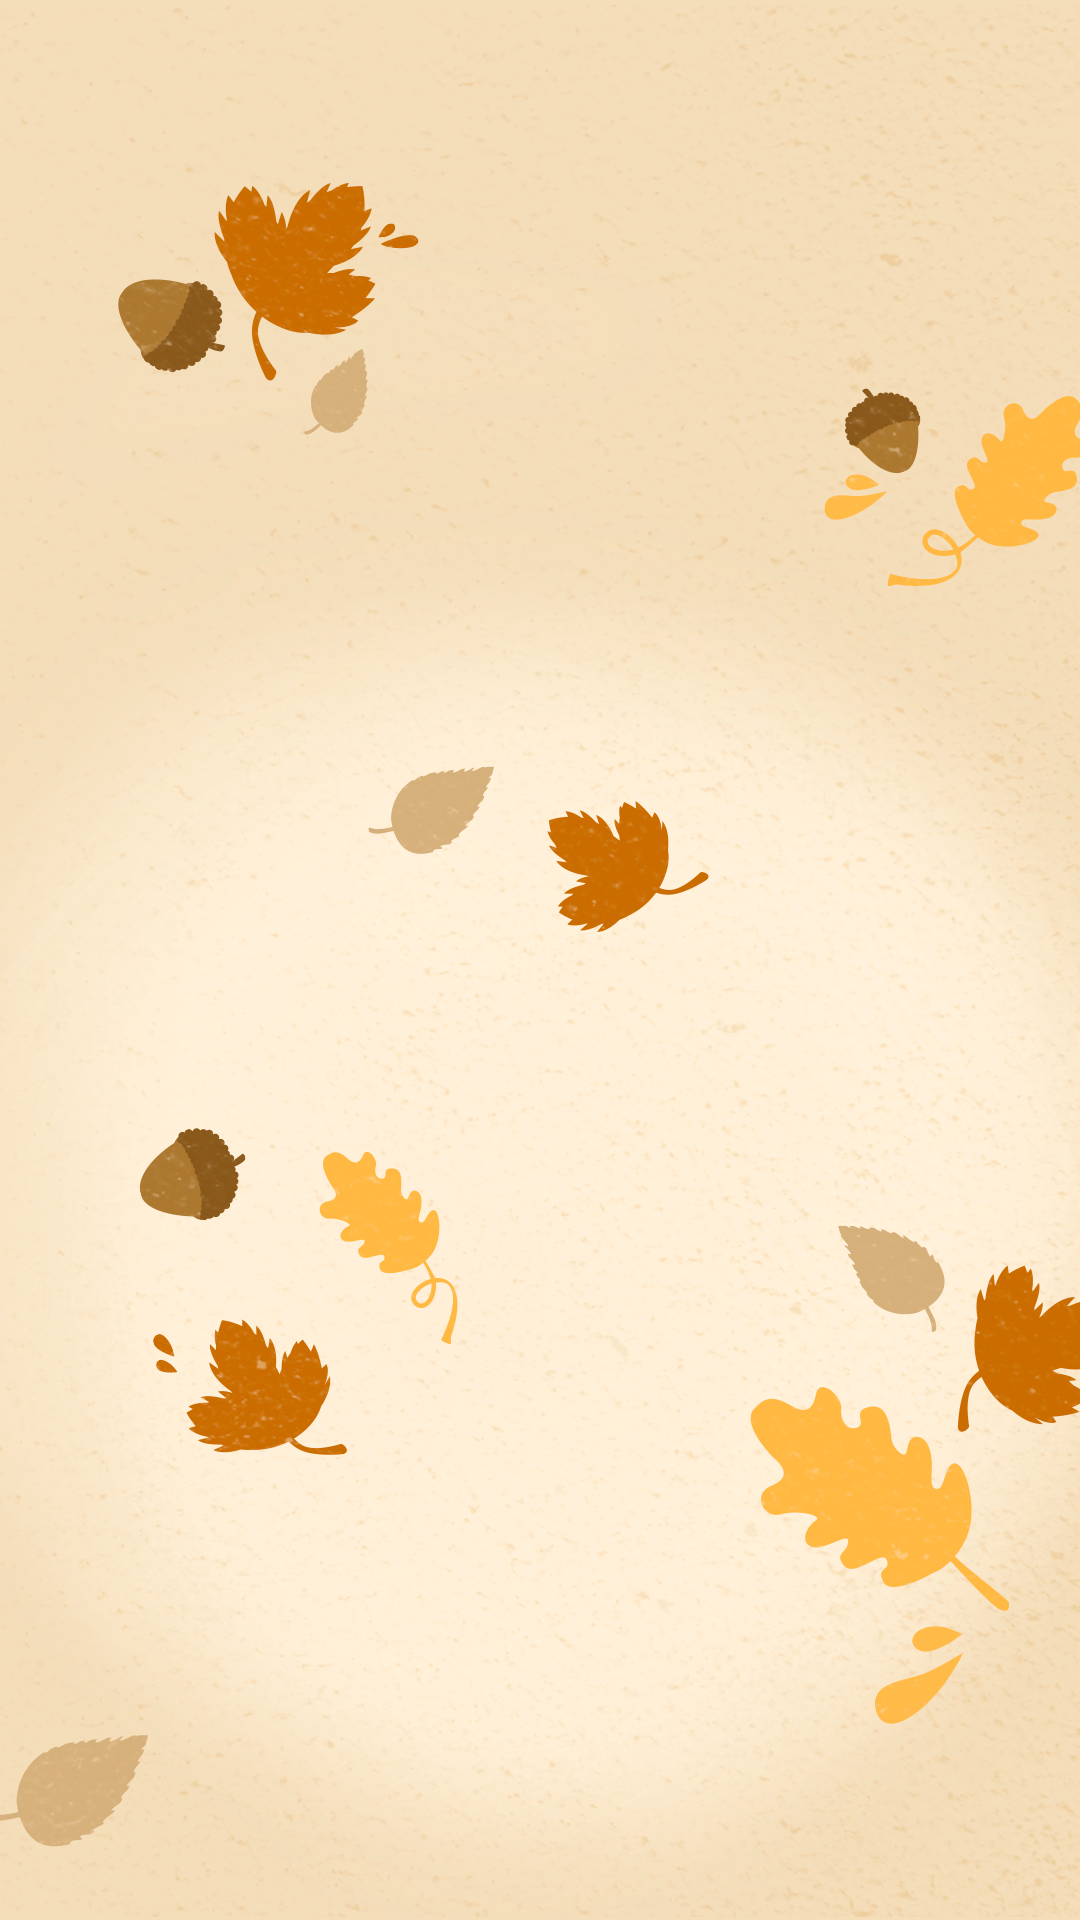 Hình nền thu đáng yêu (Cute Fall Wallpapers for iPhone - PixelsTalk.Net) Mùa thu lại về với những chiếc lá vàng rực rỡ và những bông hoa đầy nắng vàng. Bức ảnh với hình nền thu đáng yêu sẽ đem lại cho bạn sự ấm áp và thư giãn. Với những hình ảnh đáng yêu và ngọt ngào, bạn sẽ không thể khỏi cười và yêu thích mùa thu nữa.